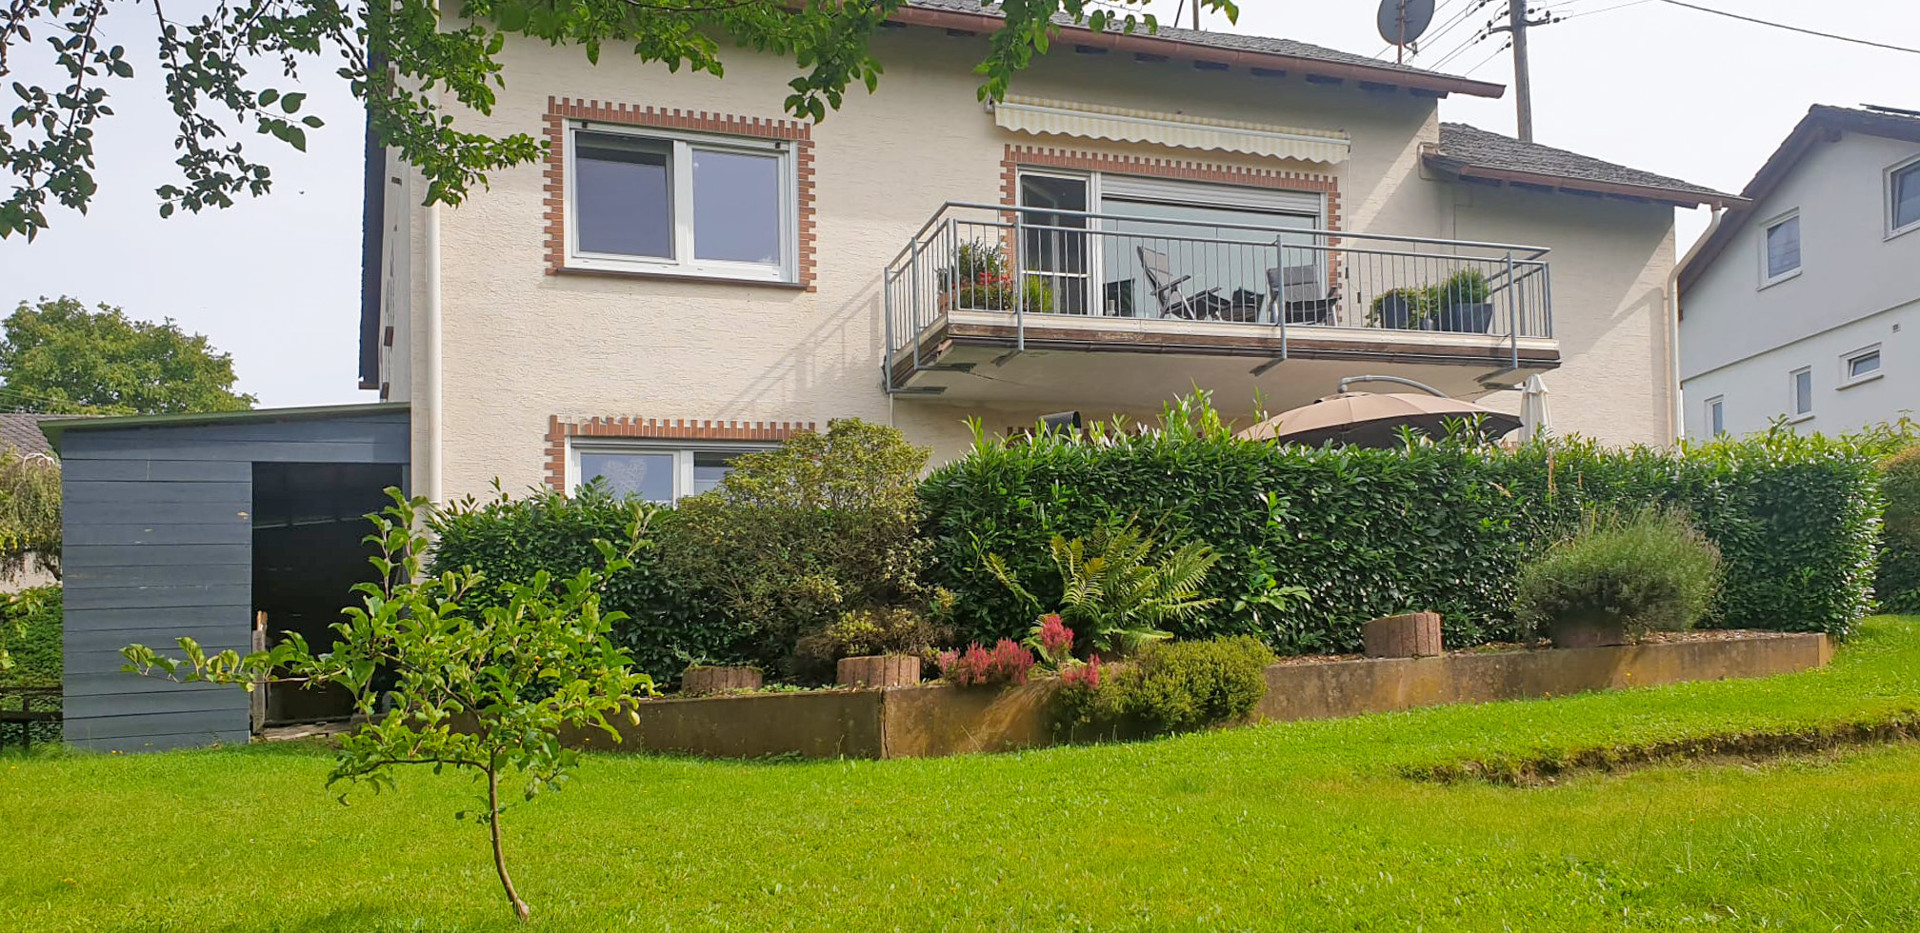 Gemütliches Einfamilienhaus mit Garten in ruhiger, zentraler Lage von Gebhardshain!